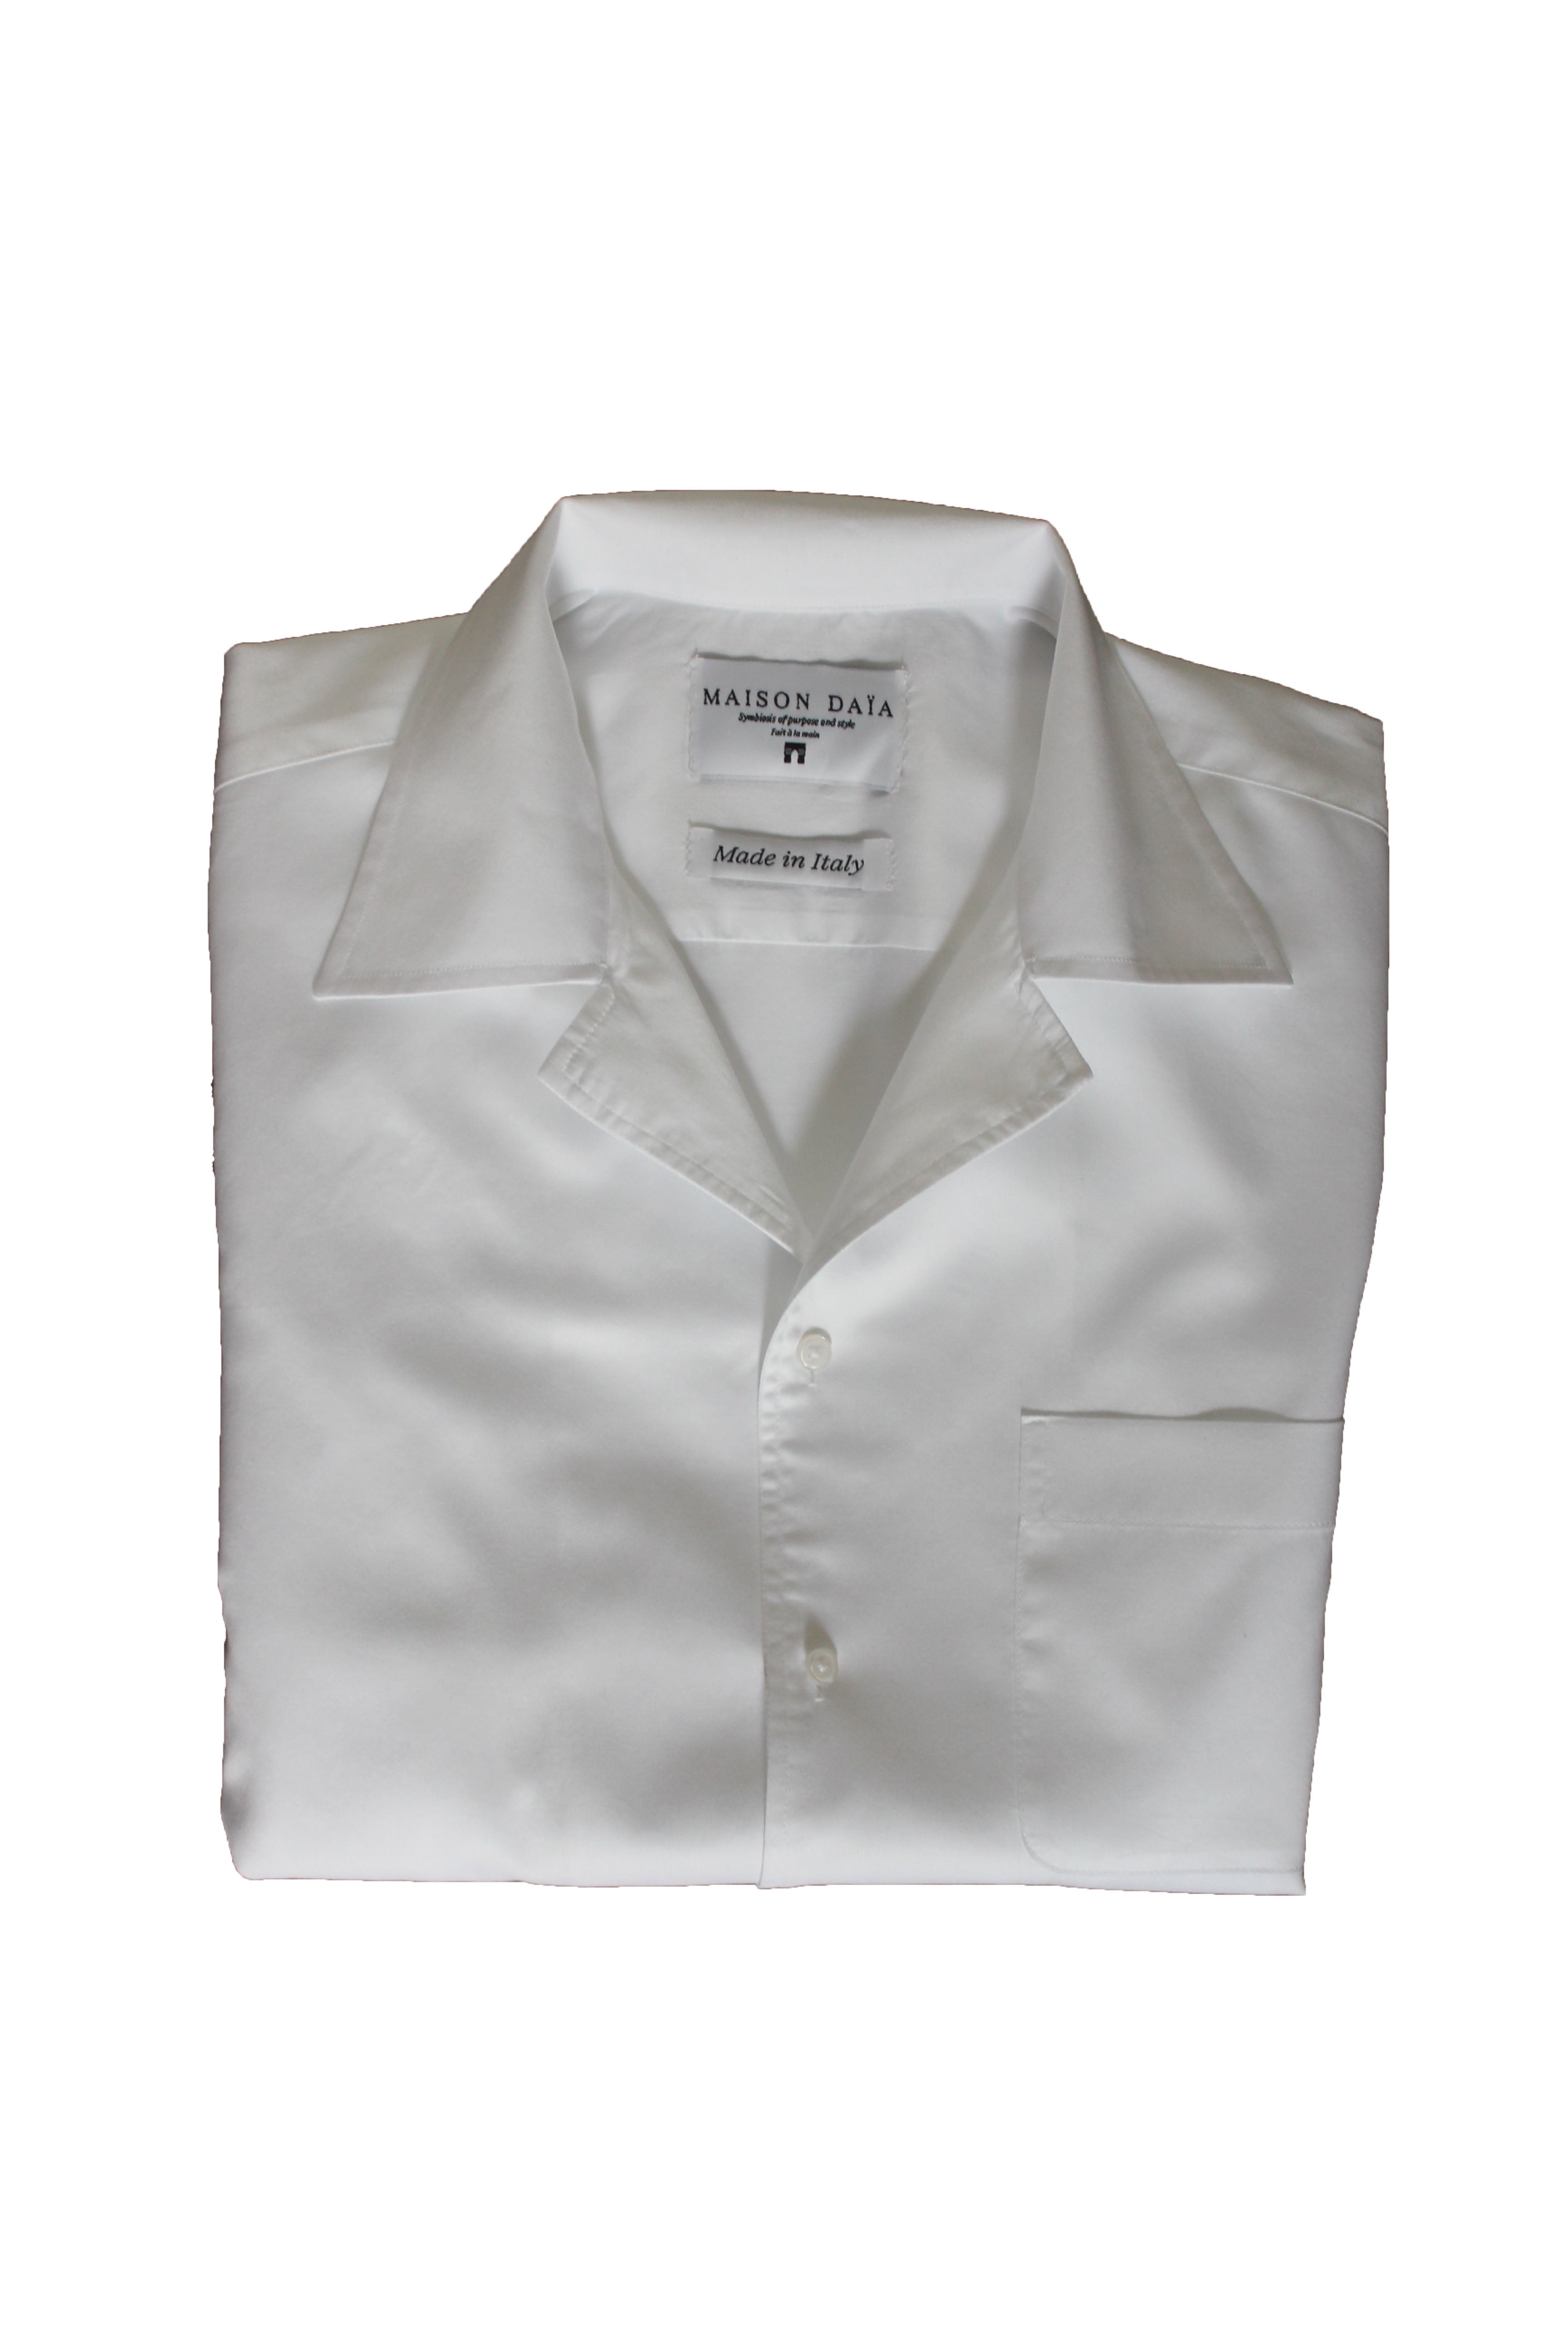 White Shirt Vintage Collar